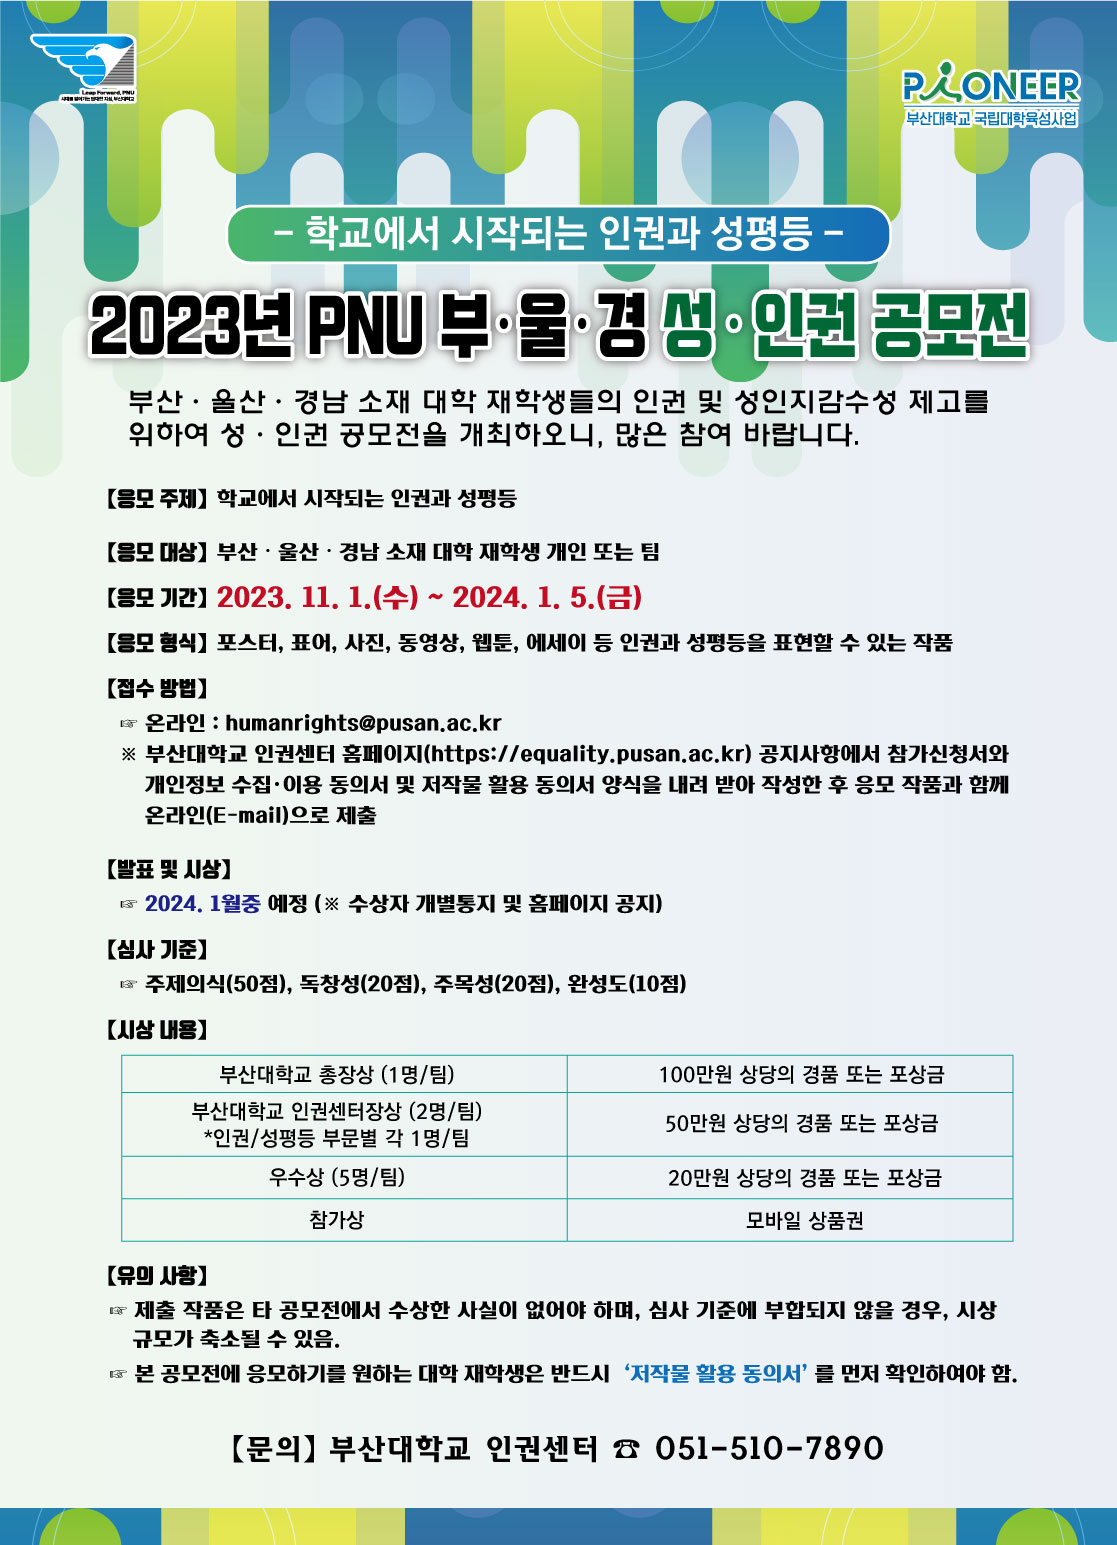 [부산대 인권센터] 『2023년 PNU 부·울·경 성·인권 공모전』 개최